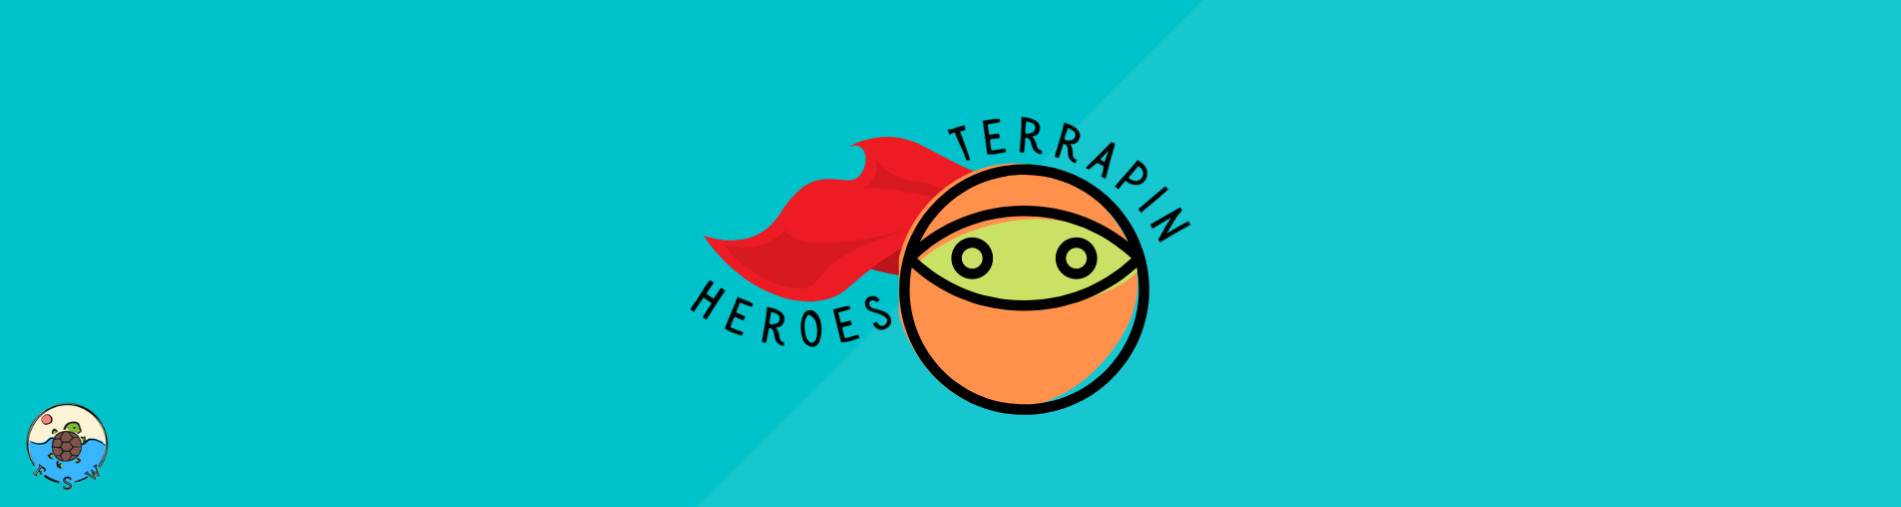 Terrapin Heroes Fundraising (T3)